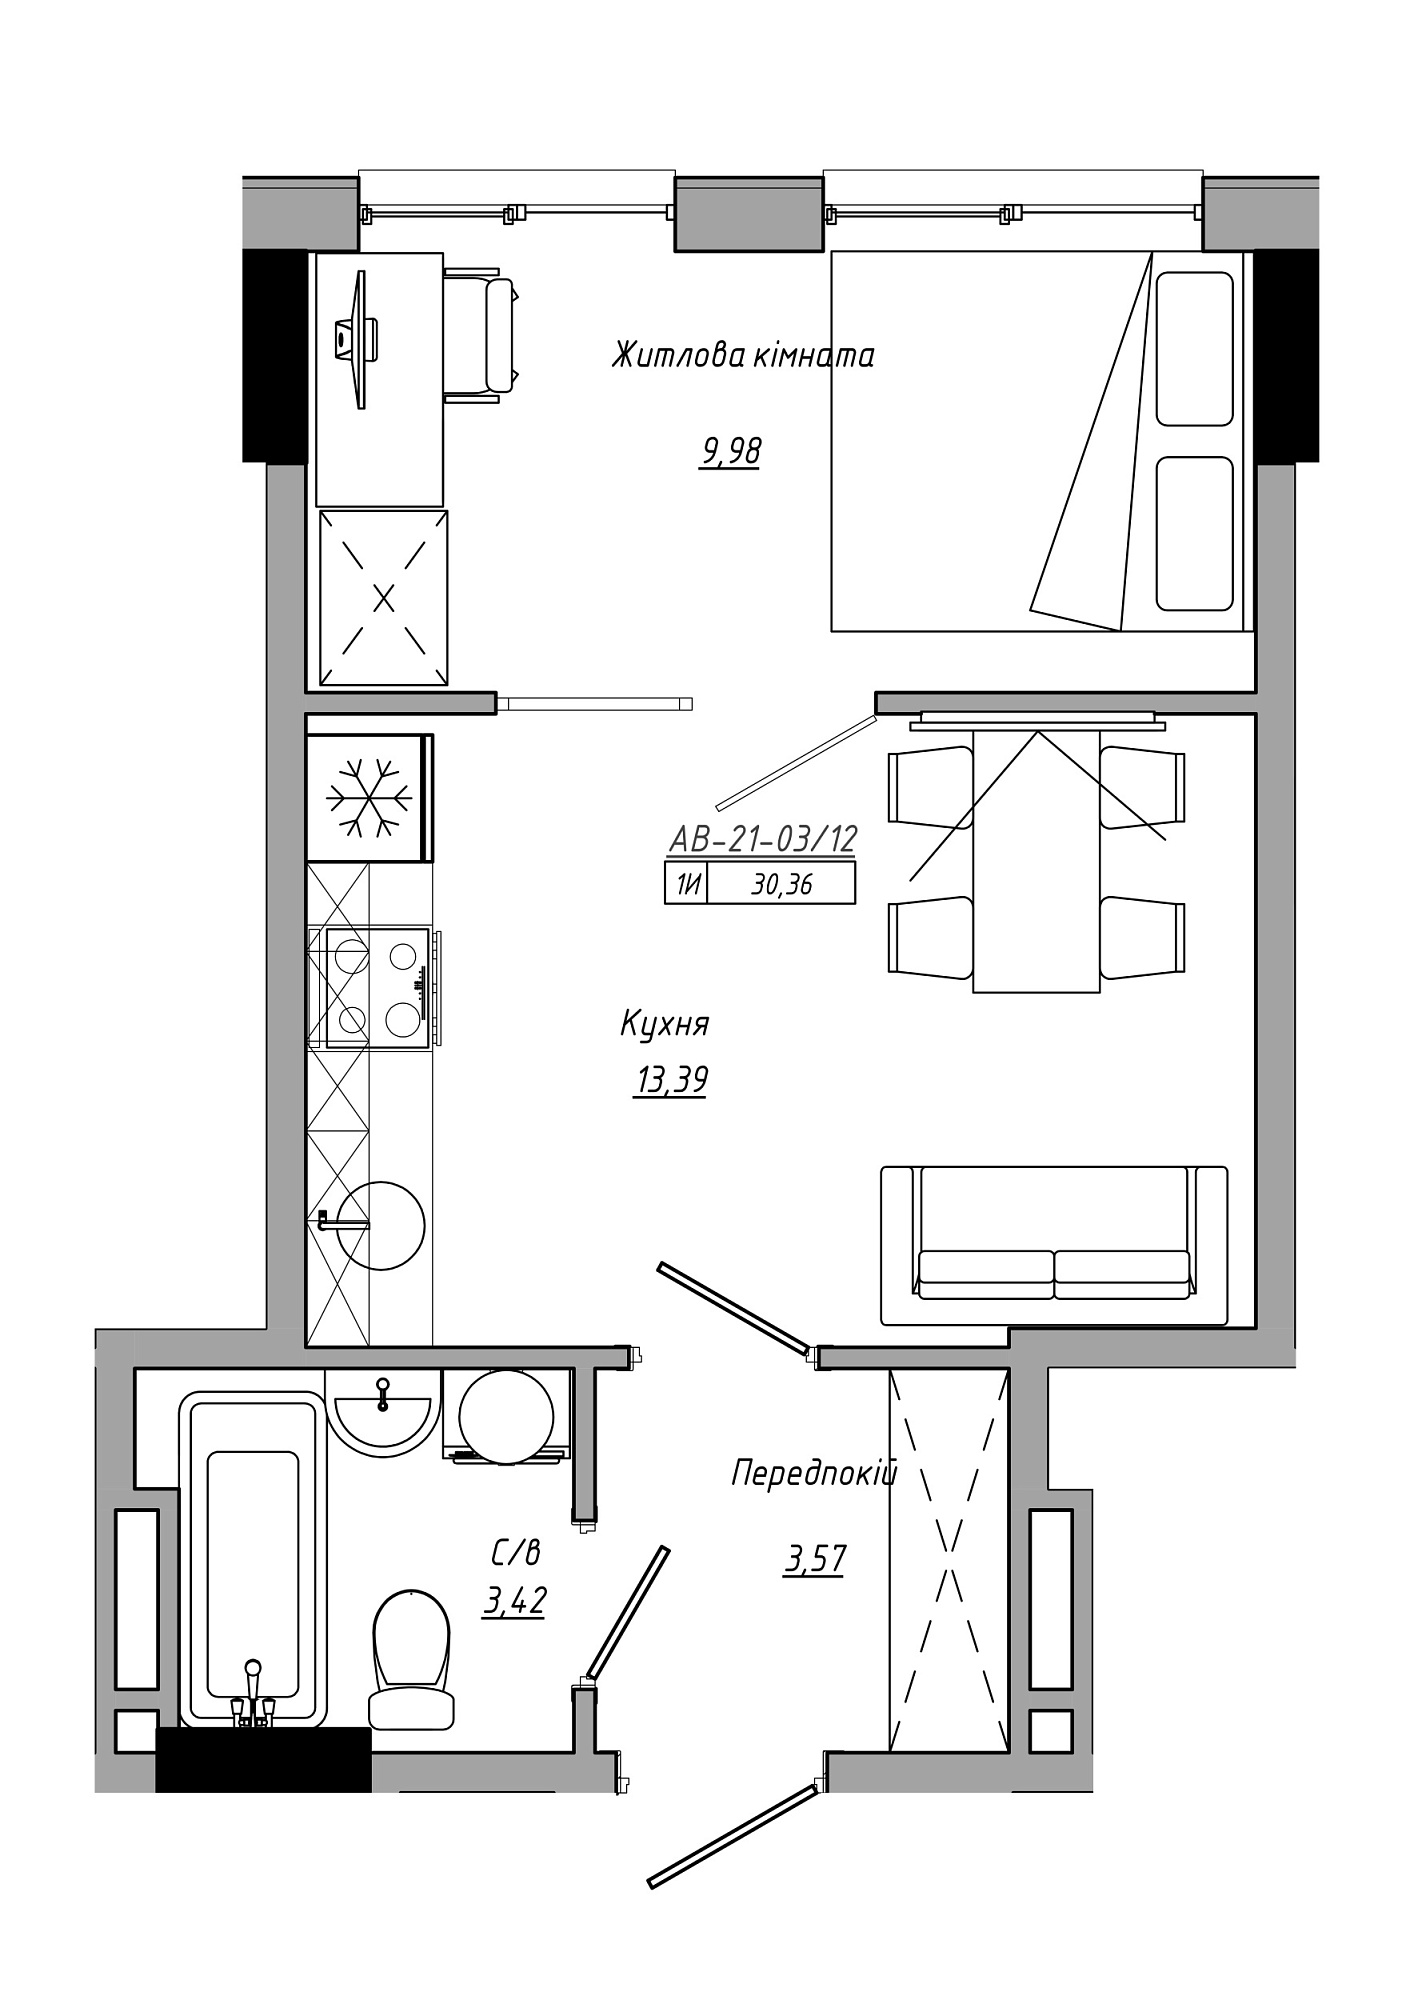 Планировка 1-к квартира площей 30.36м2, AB-21-03/00012.